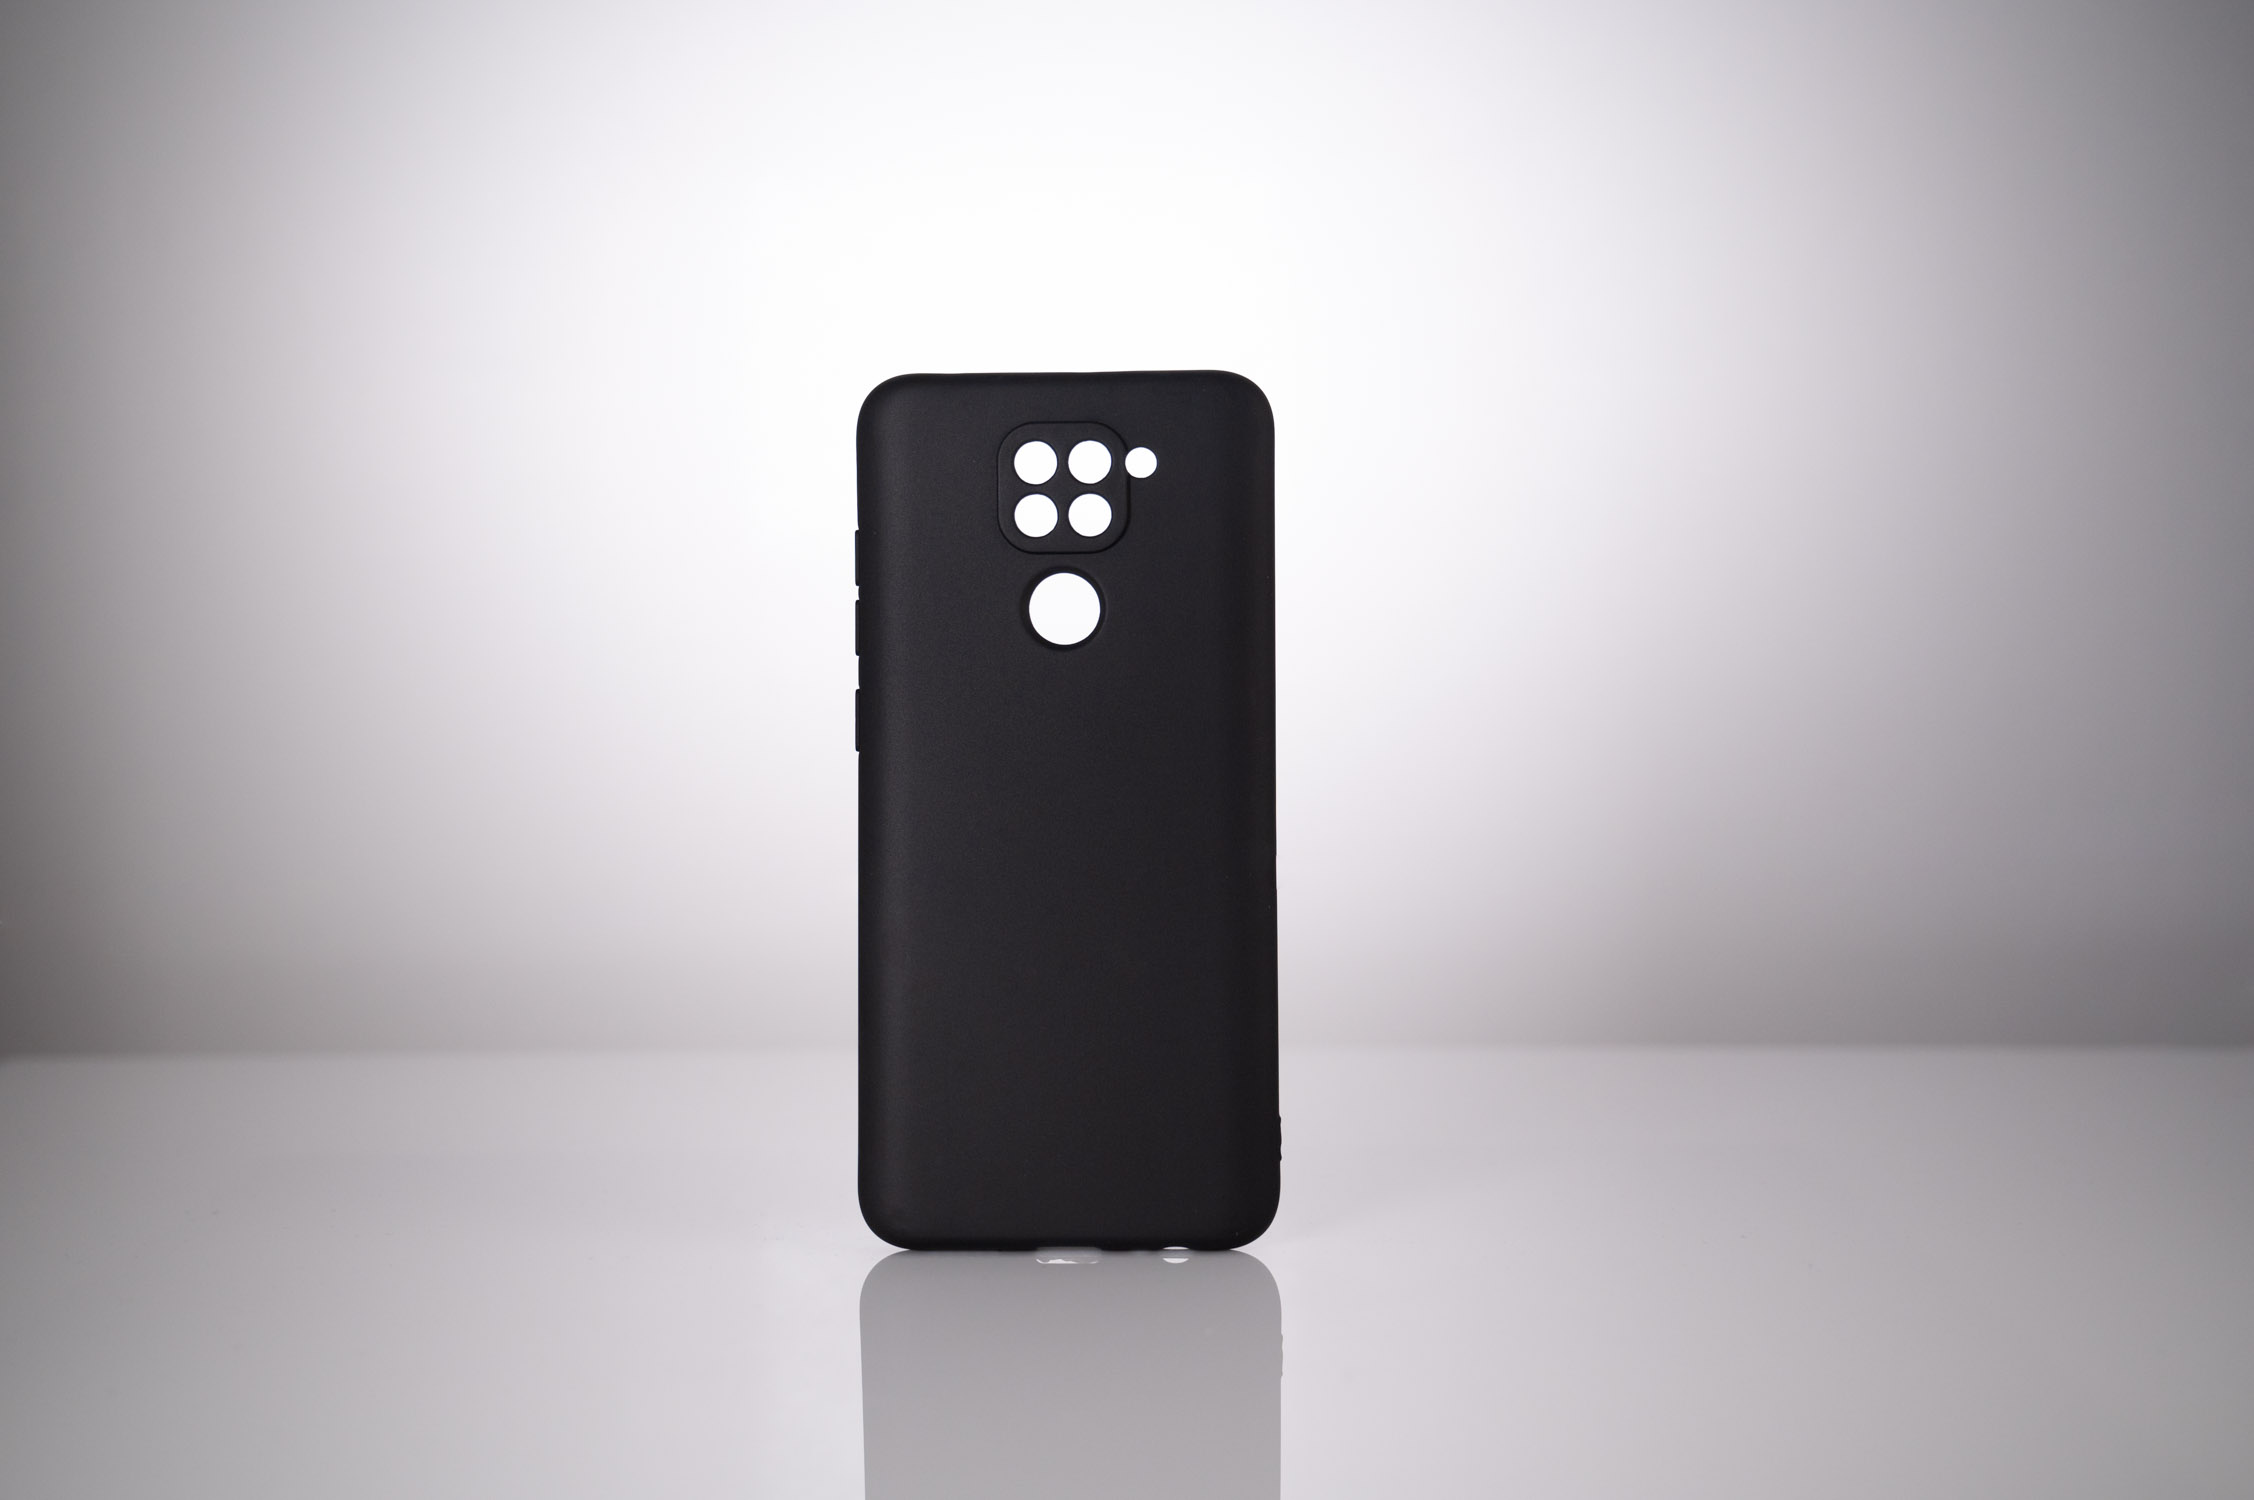 HUSA SMARTPHONE Spacer pentru Xiaomi Redmi Note 9, grosime 1.5mm, material flexibil TPU, negru "SPPC-XI-RM-N9-TPU" thumb